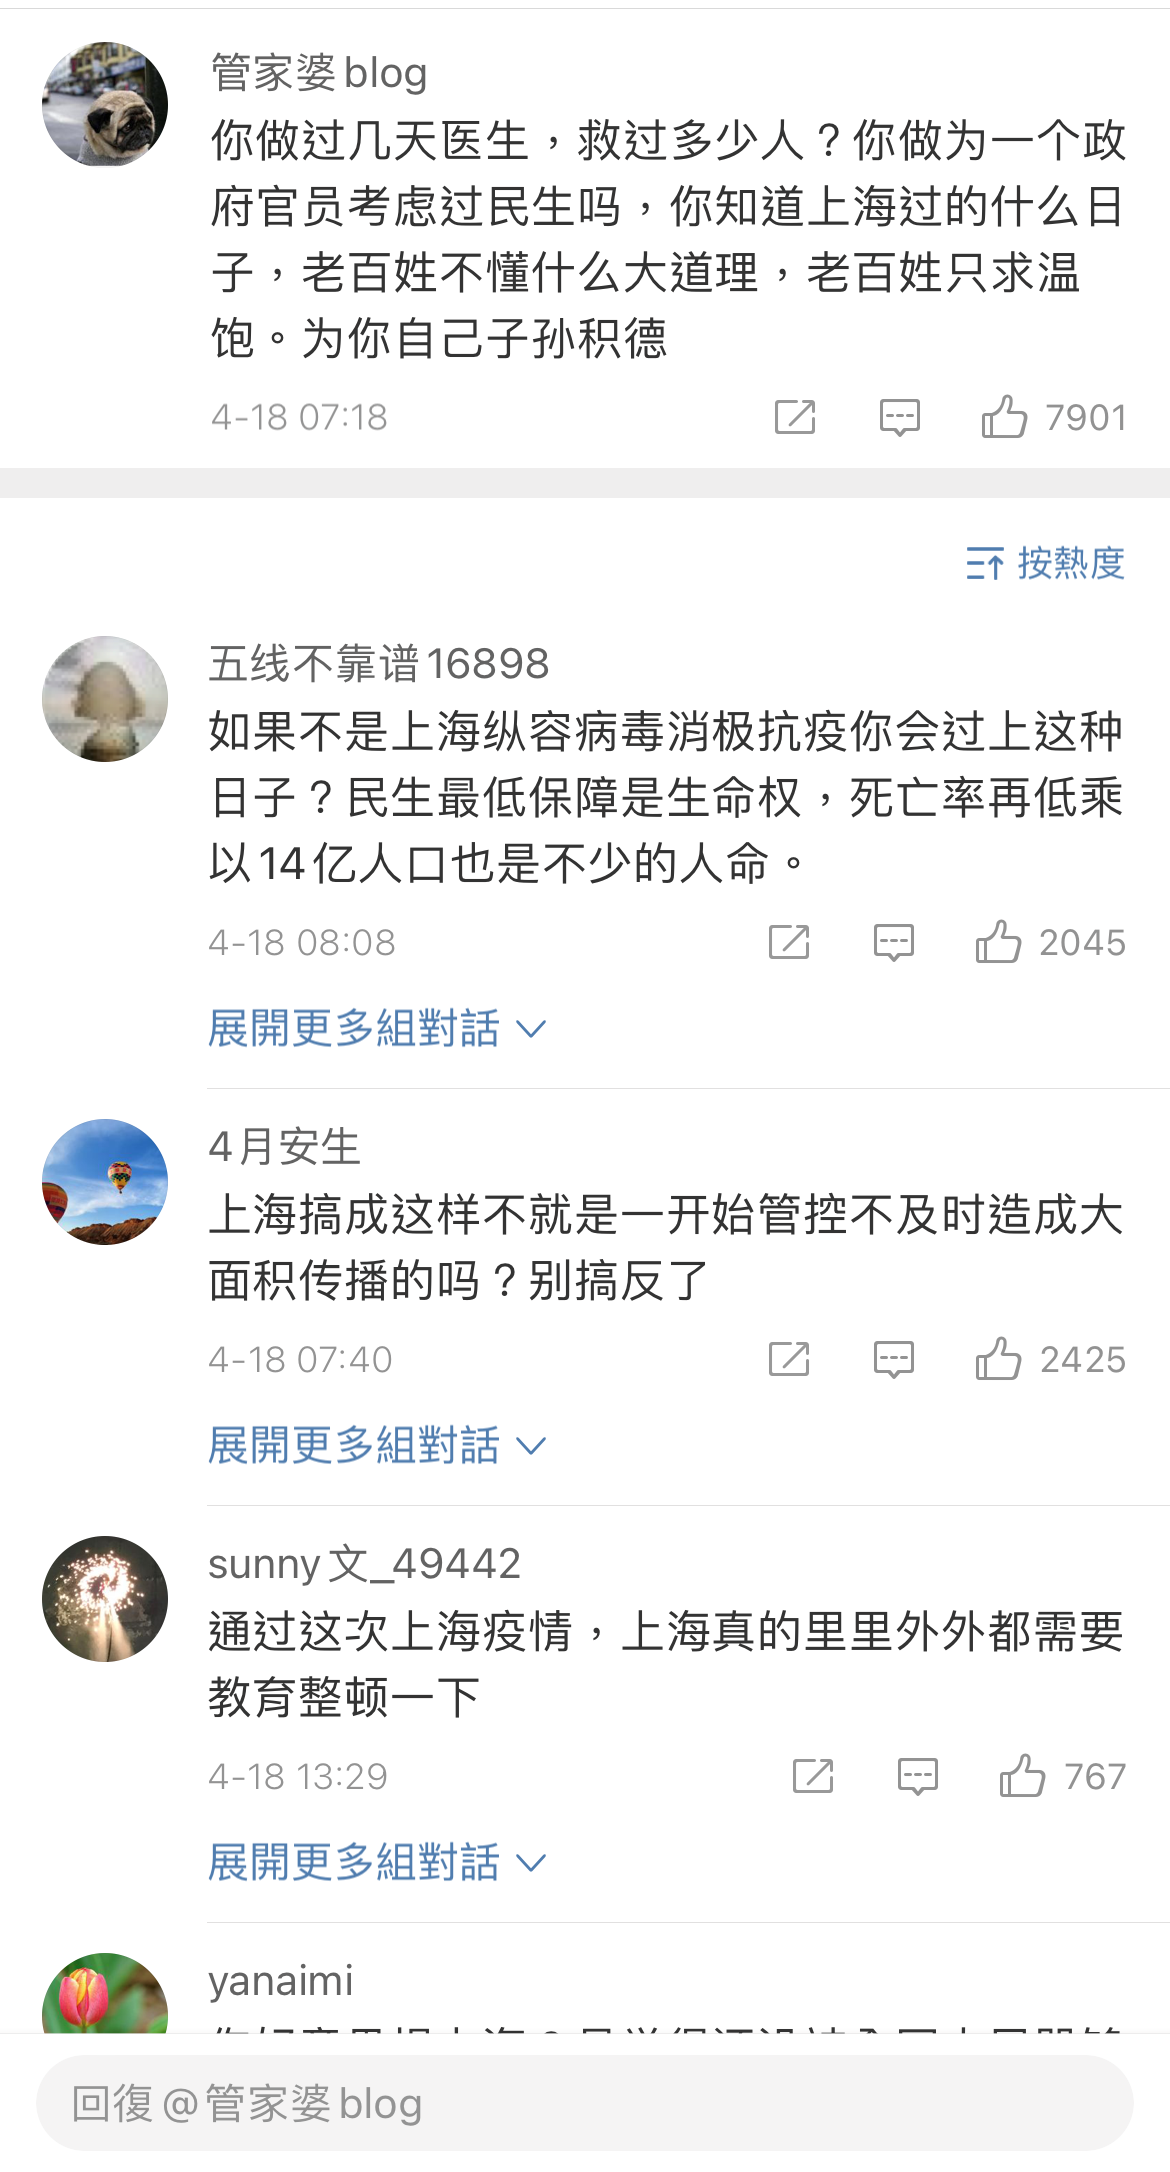 中疾控首席专家吴尊友发文赞动态清零 引发激烈争议